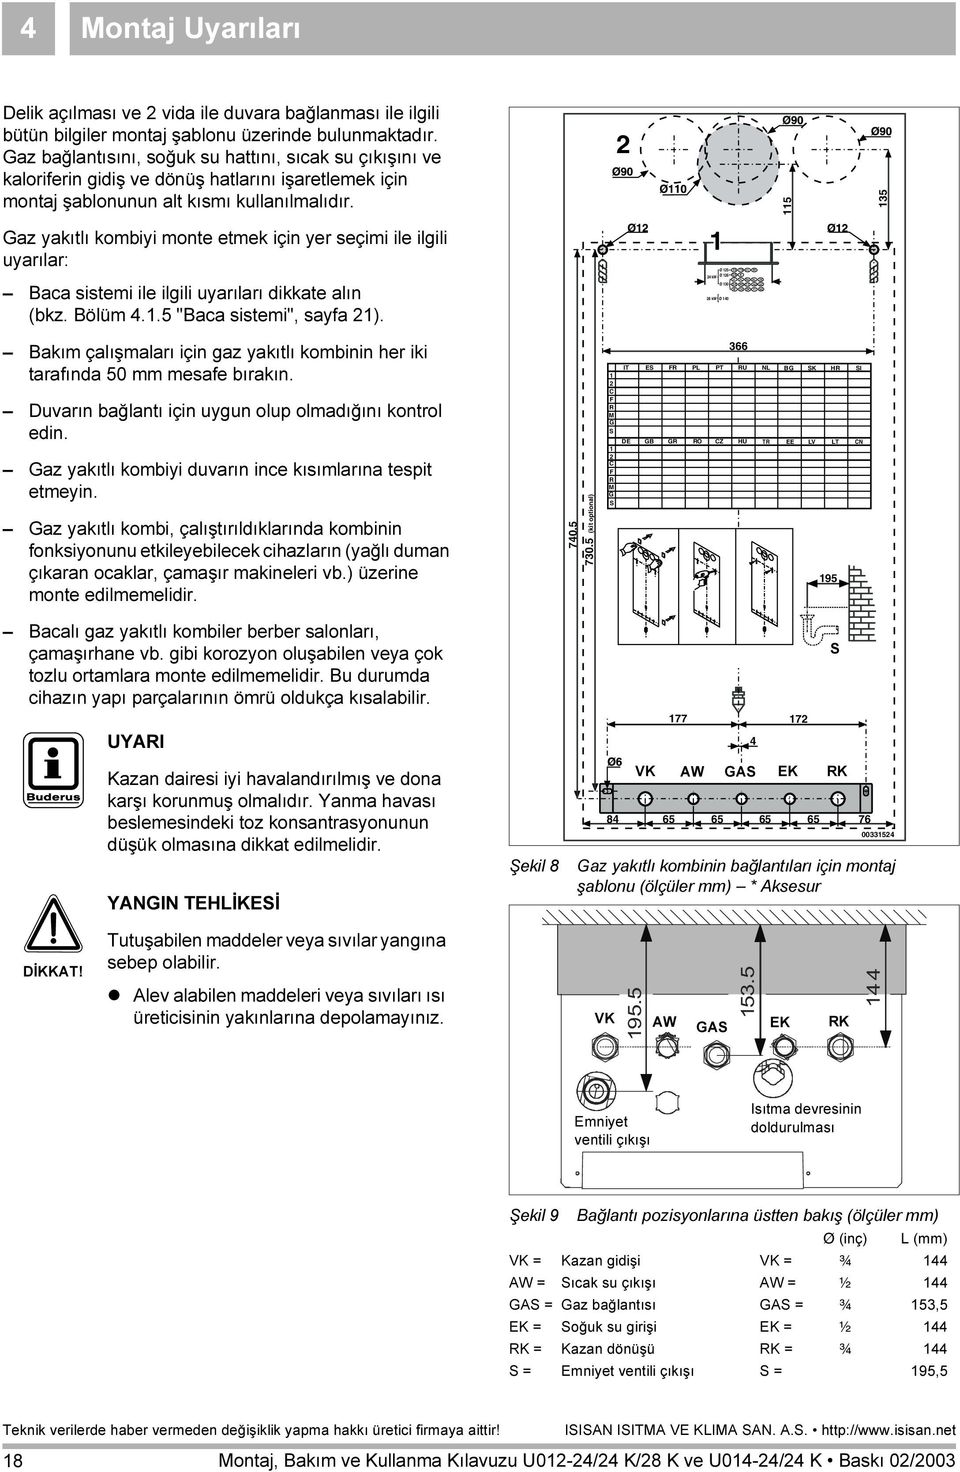 2 115 135 Gaz yakıtlı kombiyi monte etmek için yer seçimi ile ilgili uyarılar: Baca sistemi ile ilgili uyarıları dikkate alın (bkz. Bölüm 4.1.5 "Baca sistemi", sayfa 21).